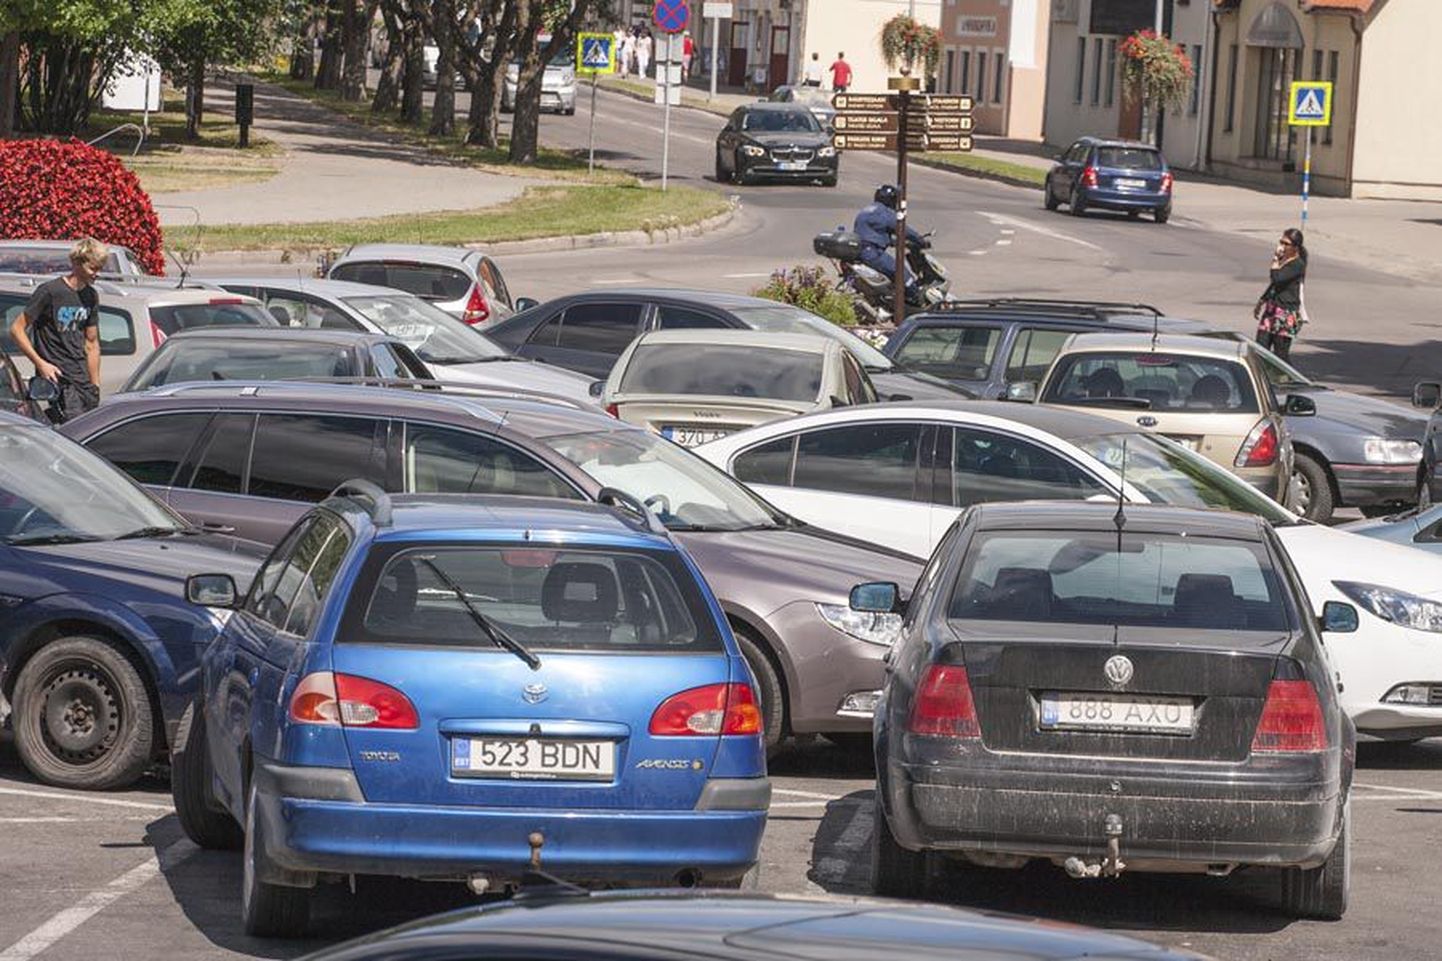 Pärast tasuta parkimise kehtima hakkamist on Viljandi kesklinnas parkivate autode hulk märgatavalt kasvanud. Pilt on tehtud eile päeval.